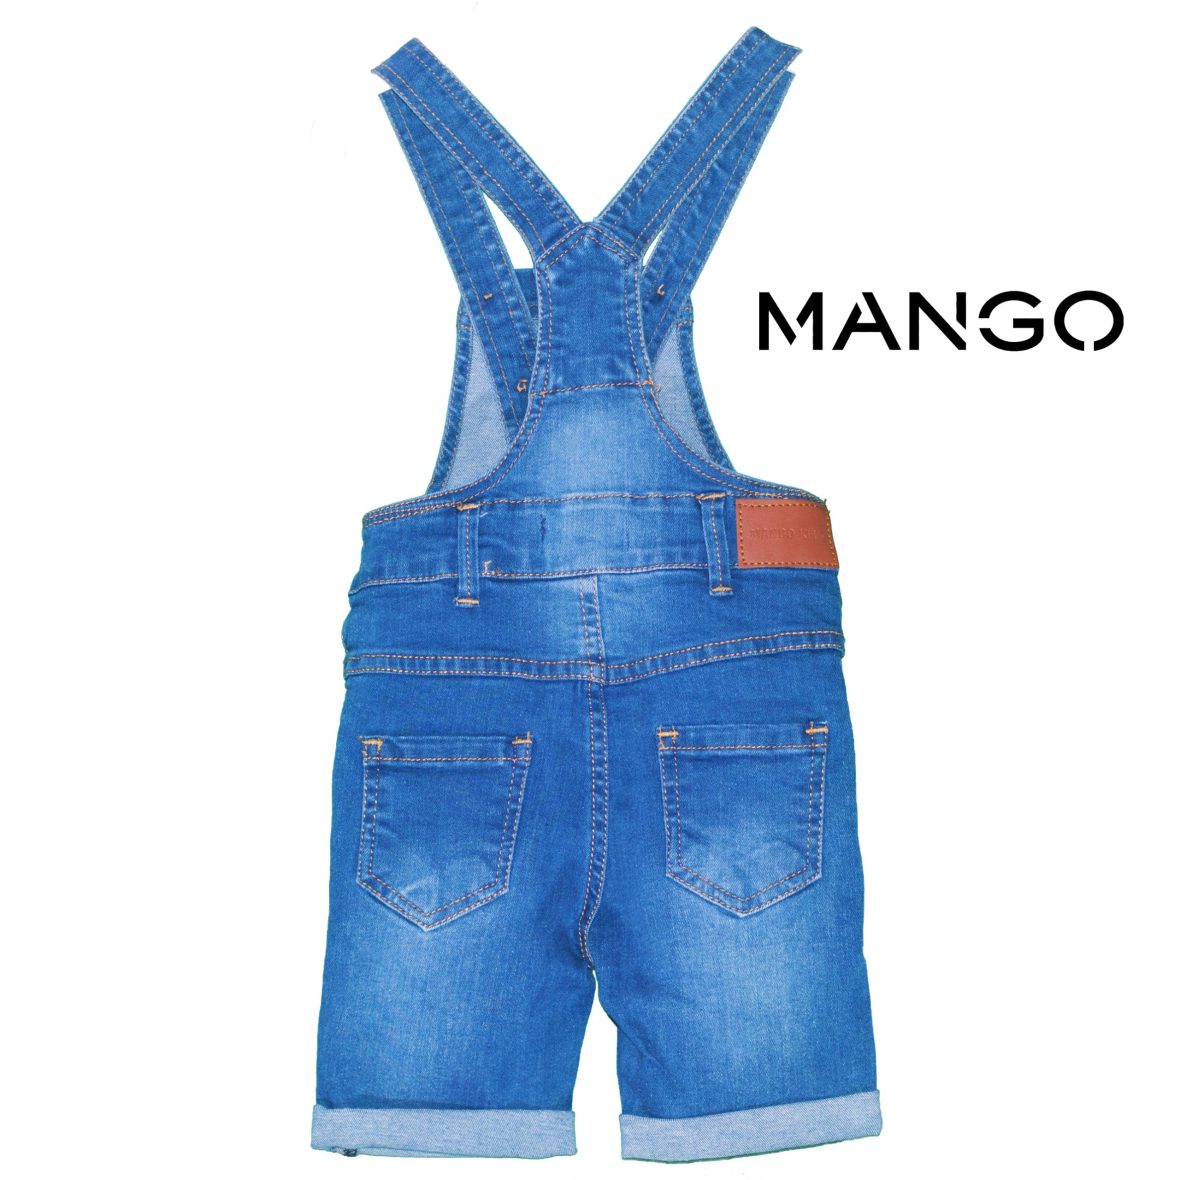 MANGO Brand Dangri